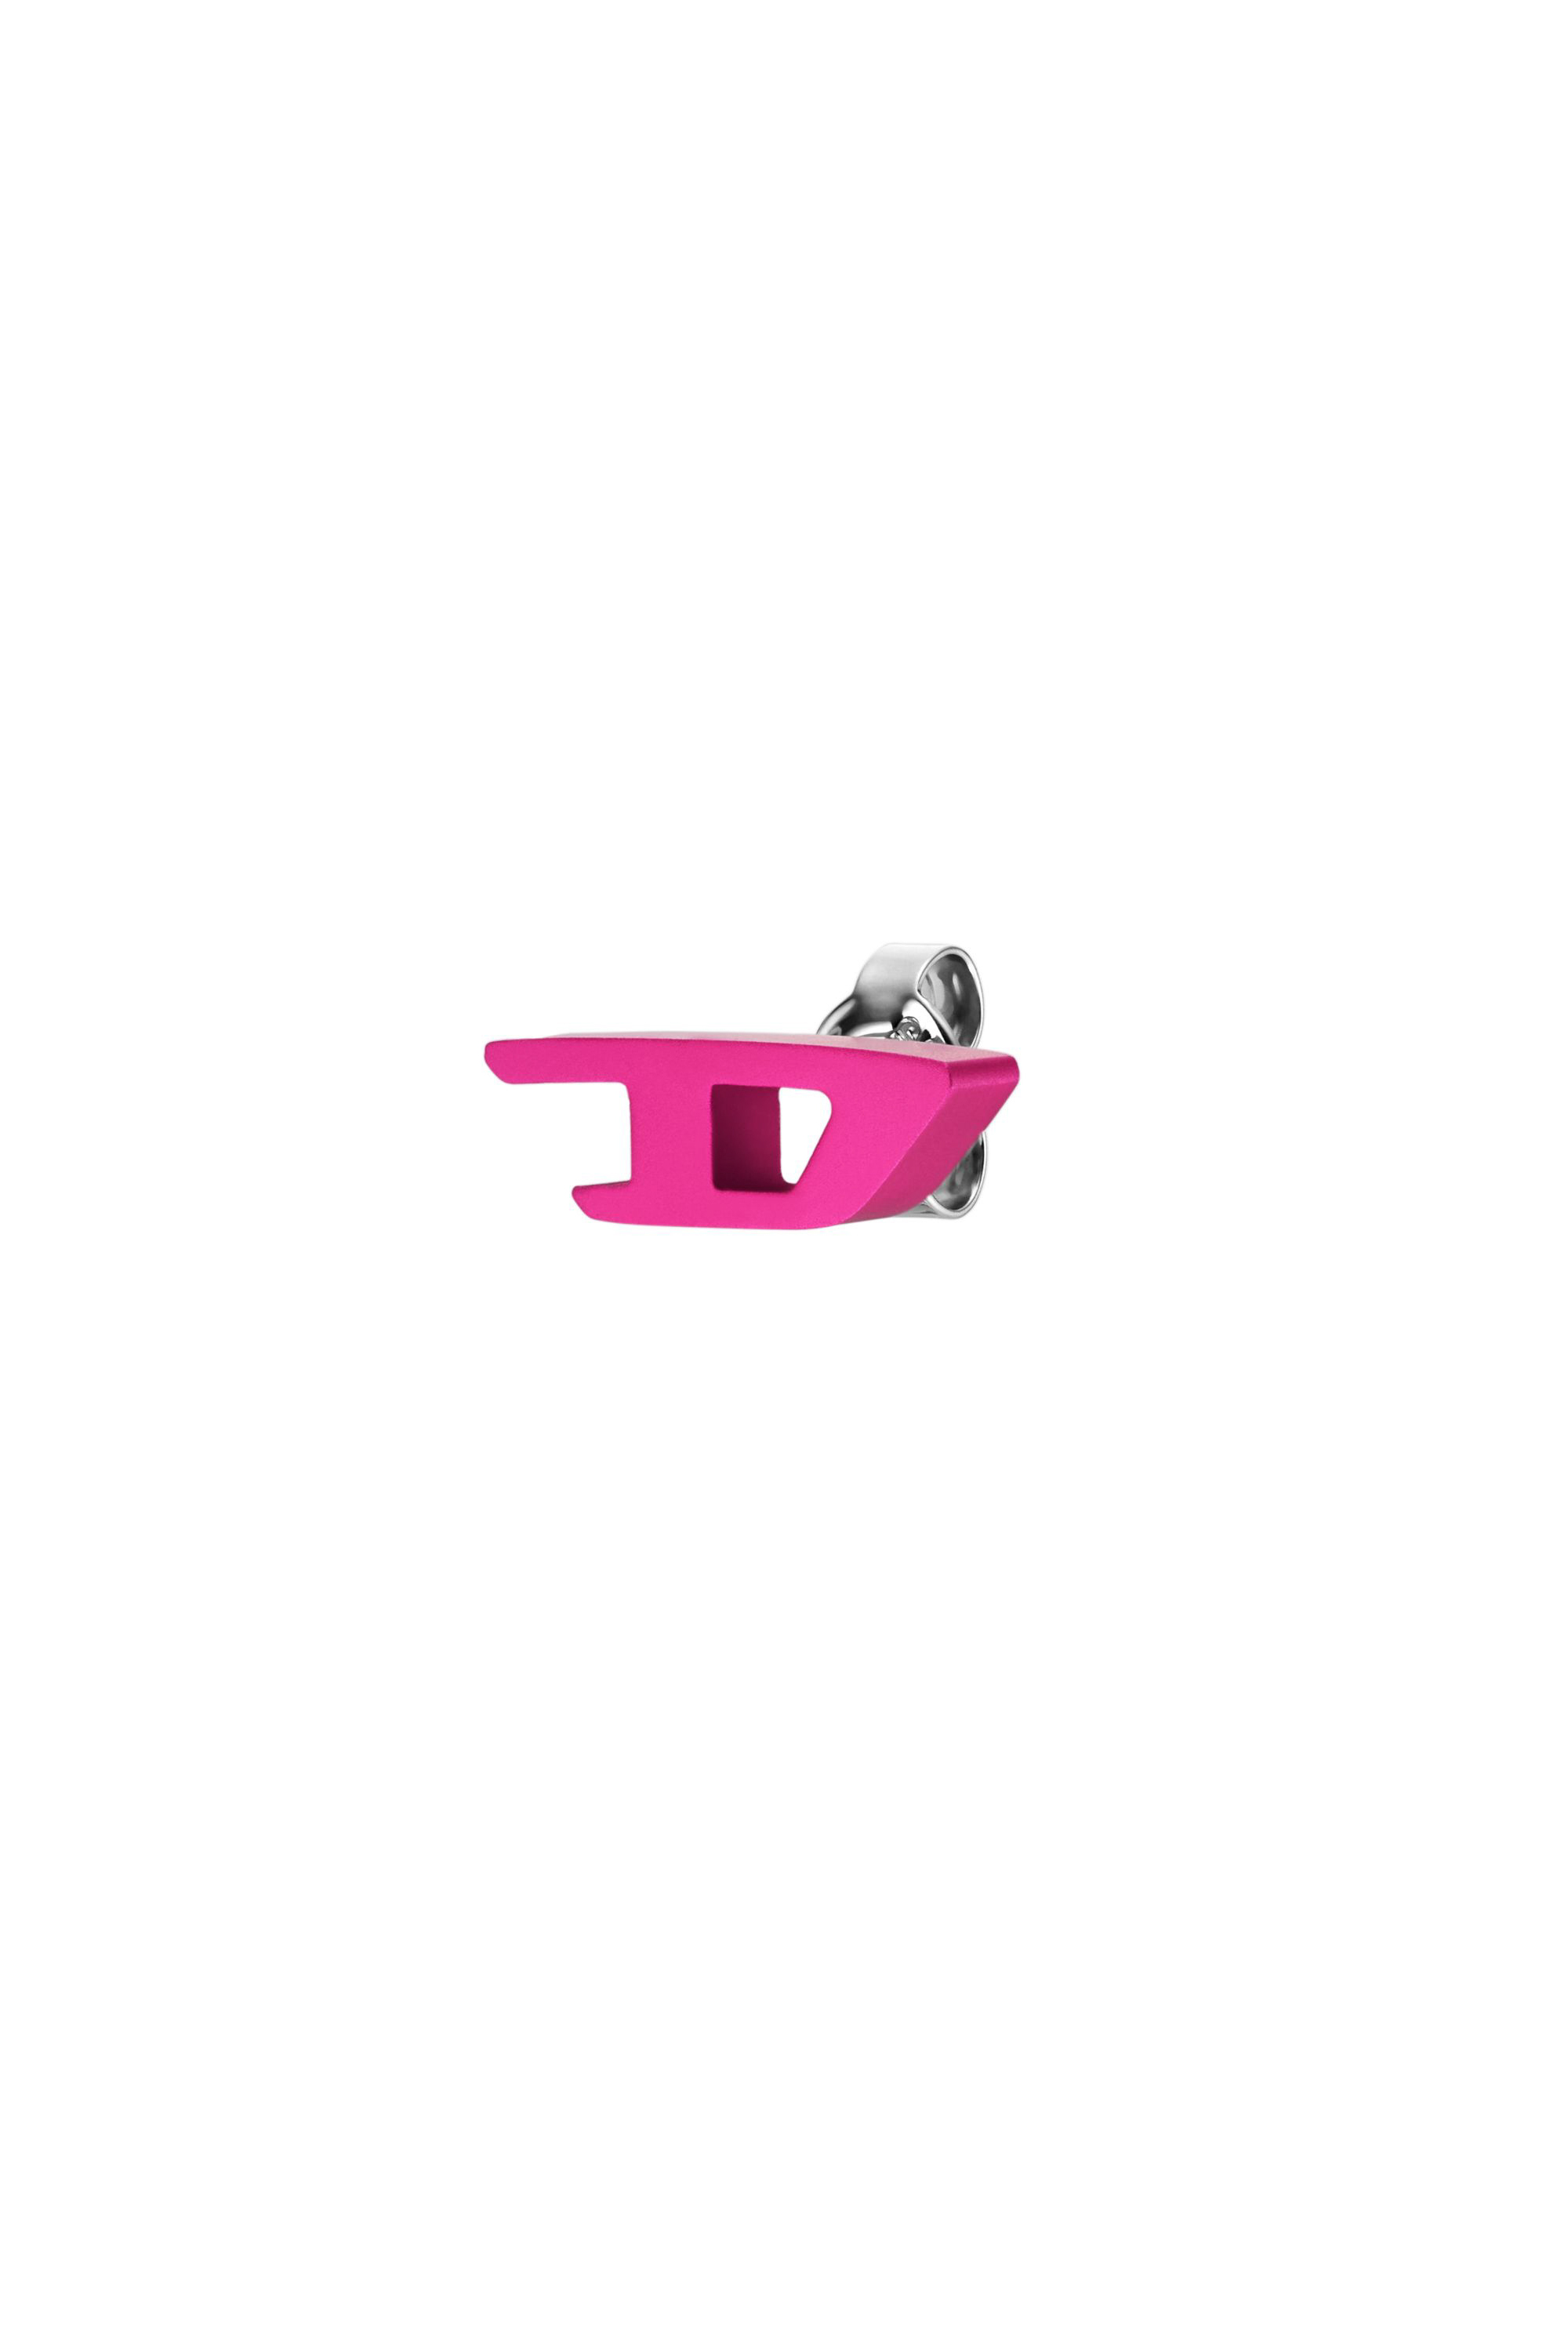 Diesel - Ohrstecker aus rosafarbenem Aluminium - Ohrringe - Unisex - Rosa